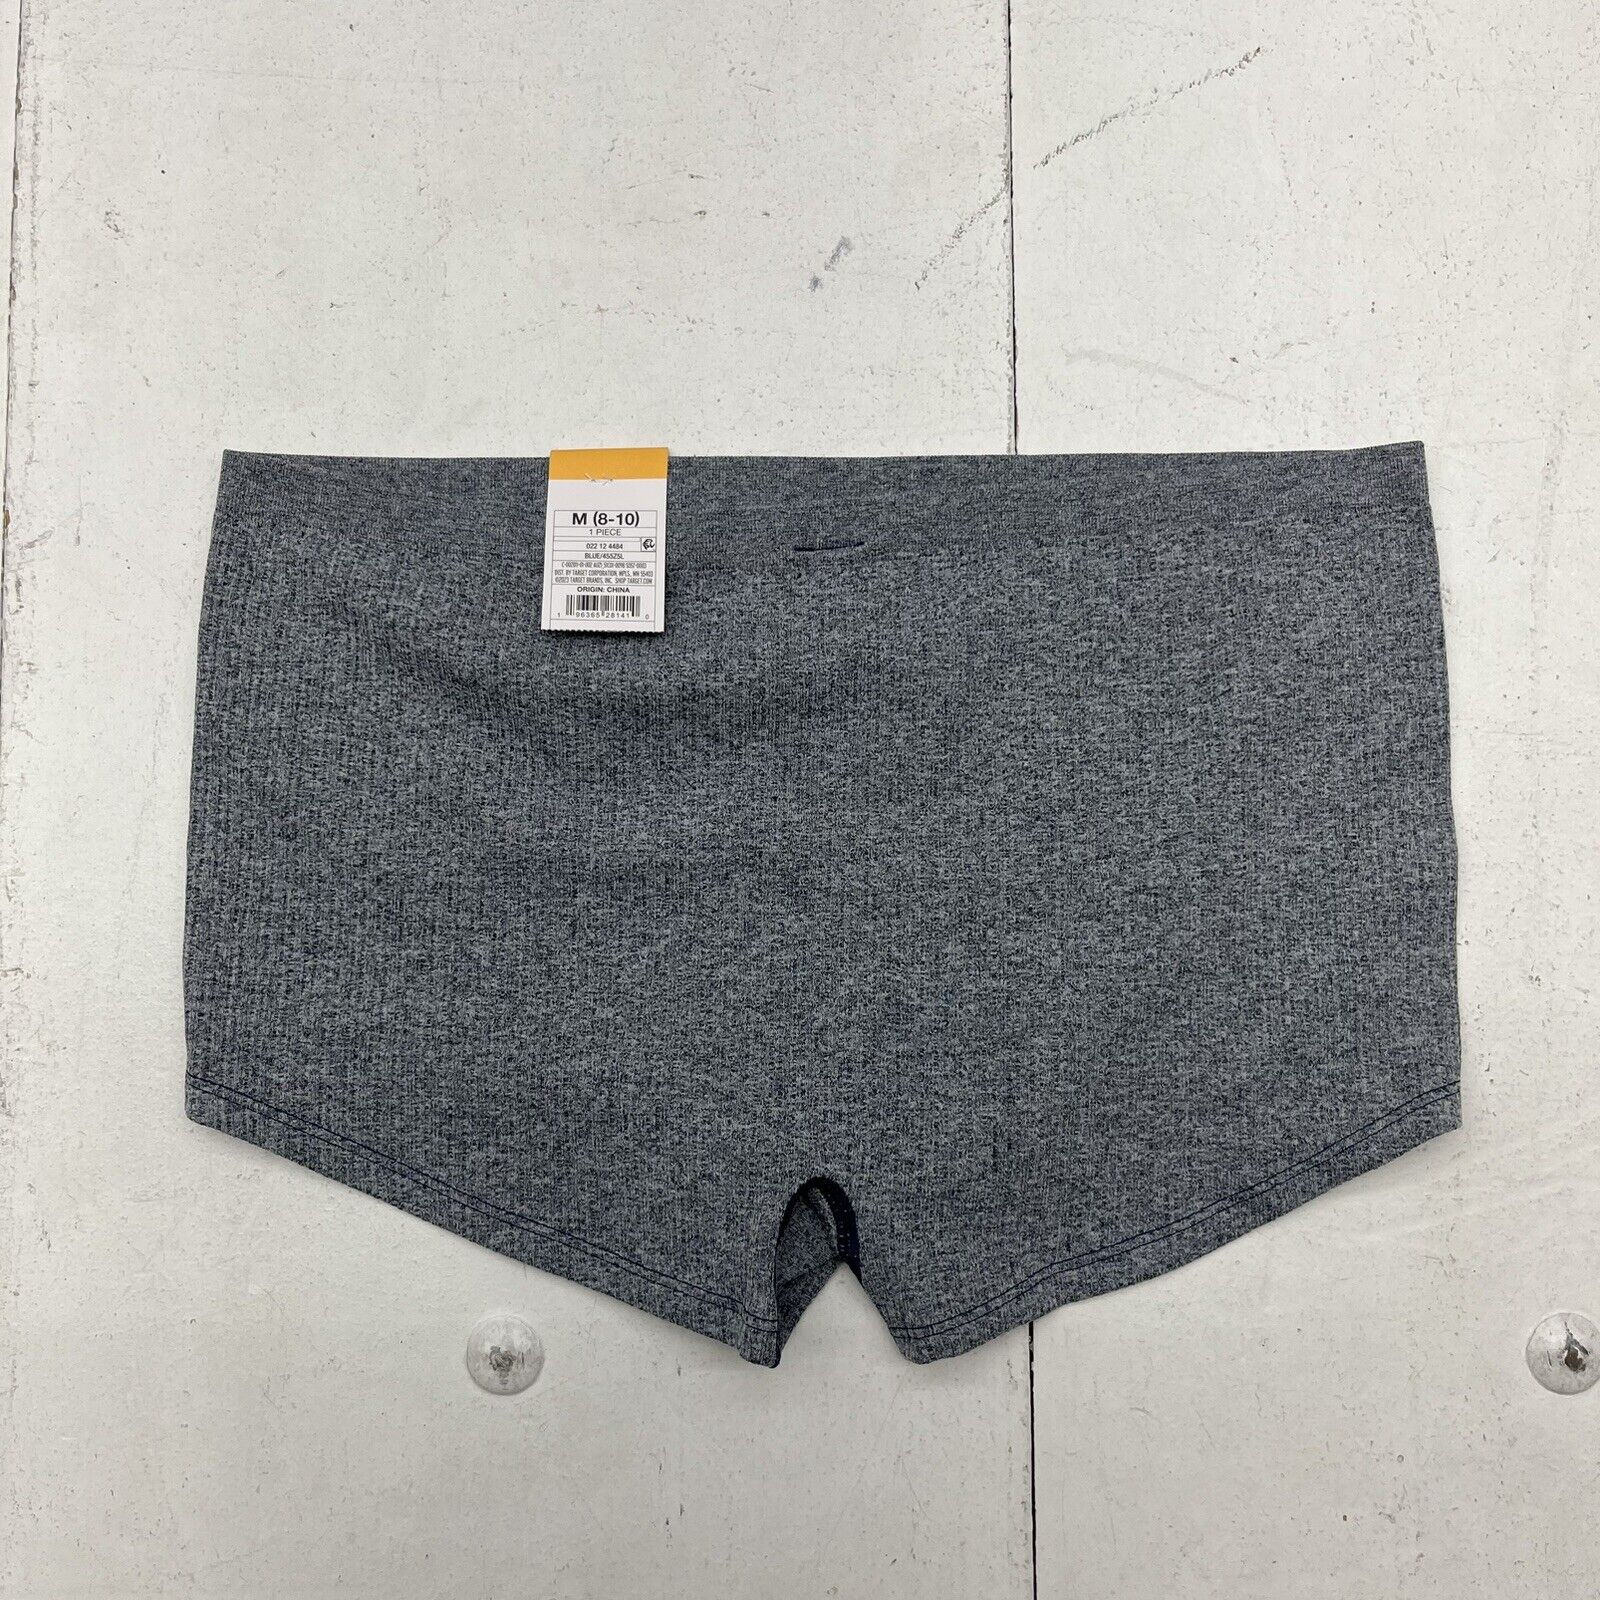 Auden Gray Seamless Boyshort Underwear Women's Size Medium NEW - beyond  exchange